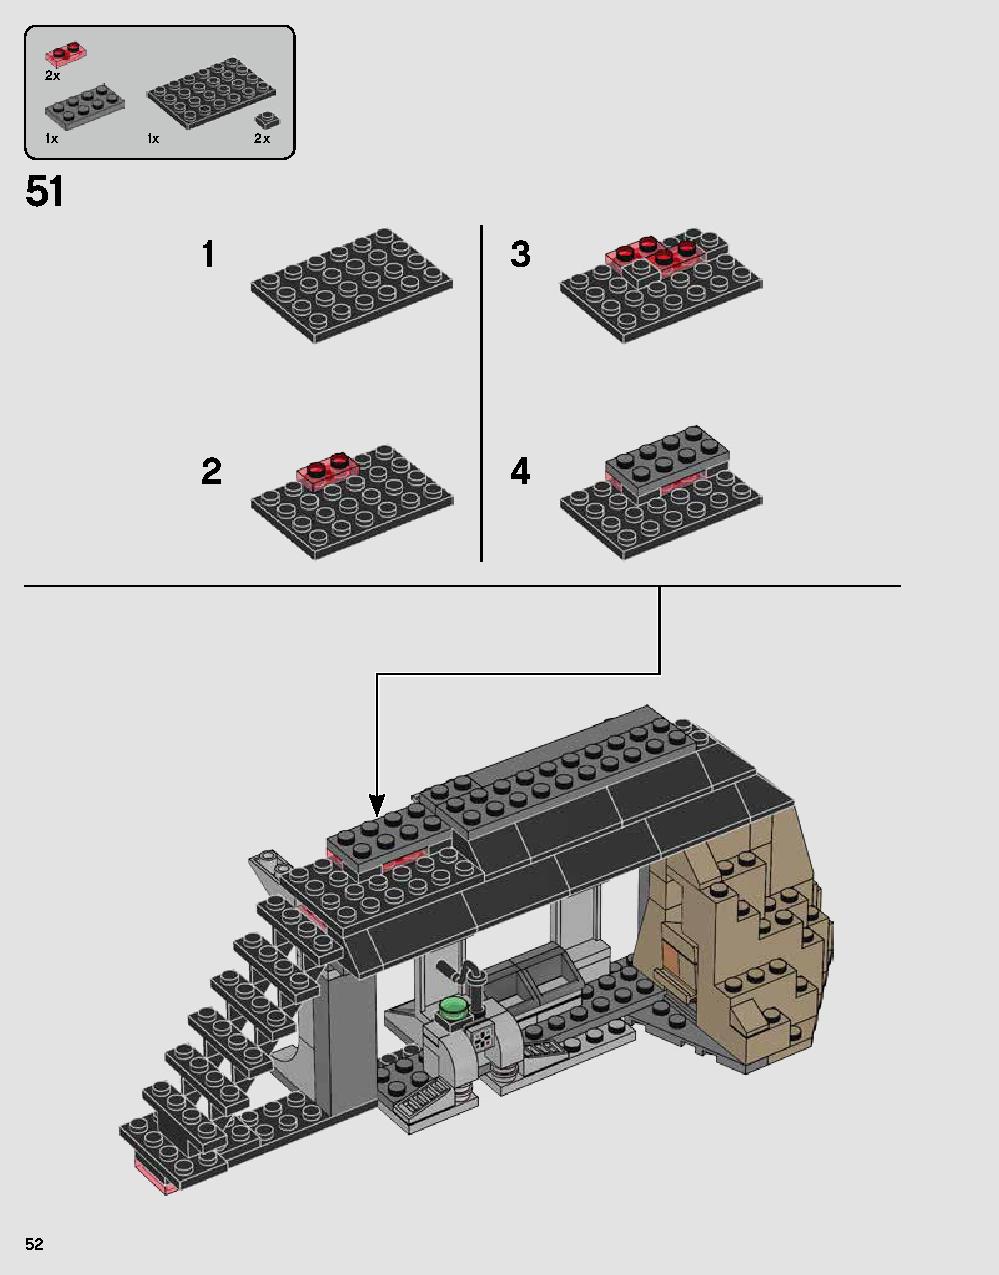 ダース・ベイダーの城 75251 レゴの商品情報 レゴの説明書・組立方法 52 page